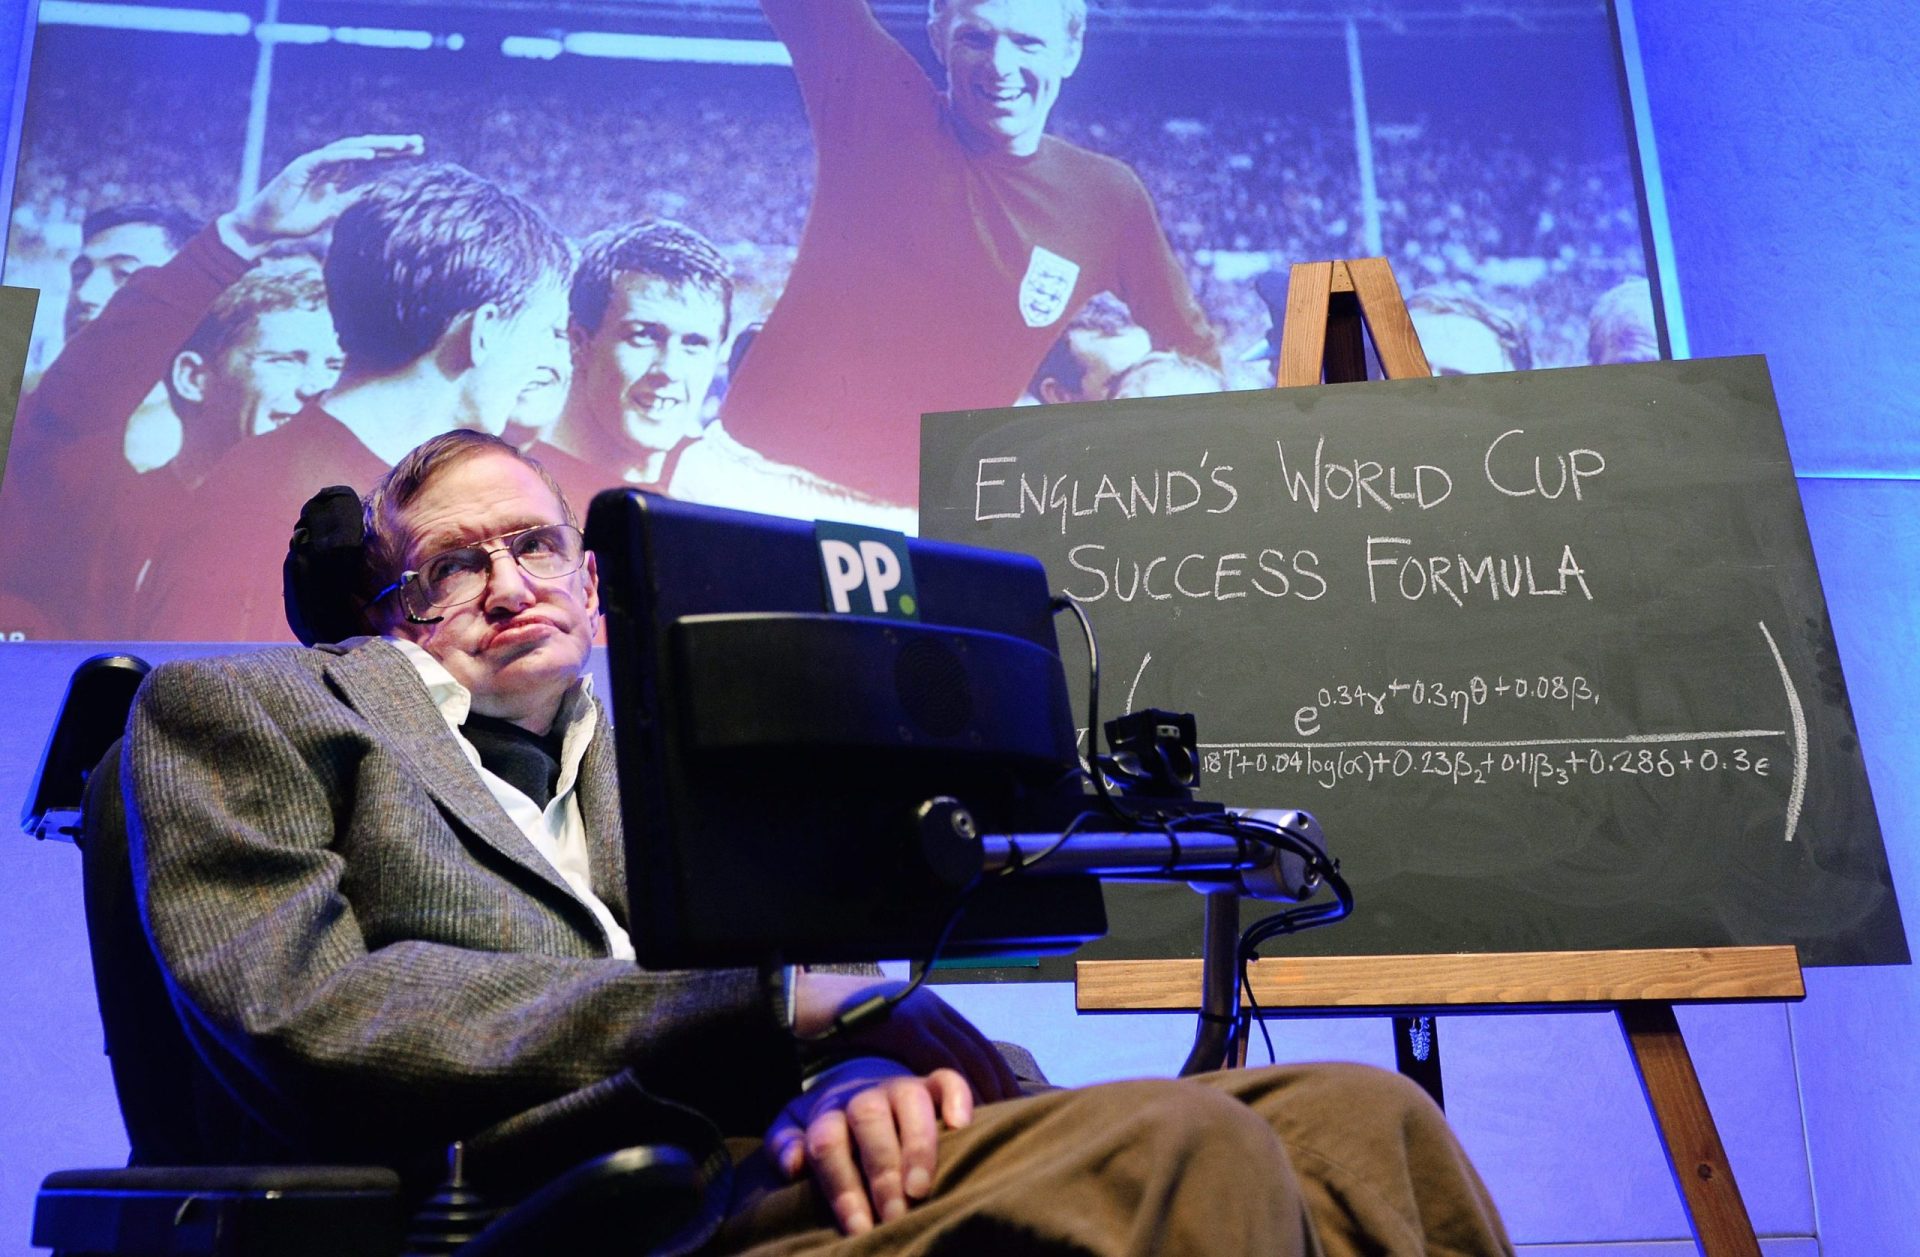 Inglaterra campeã mundial? Stephen Hawking criou a fórmula